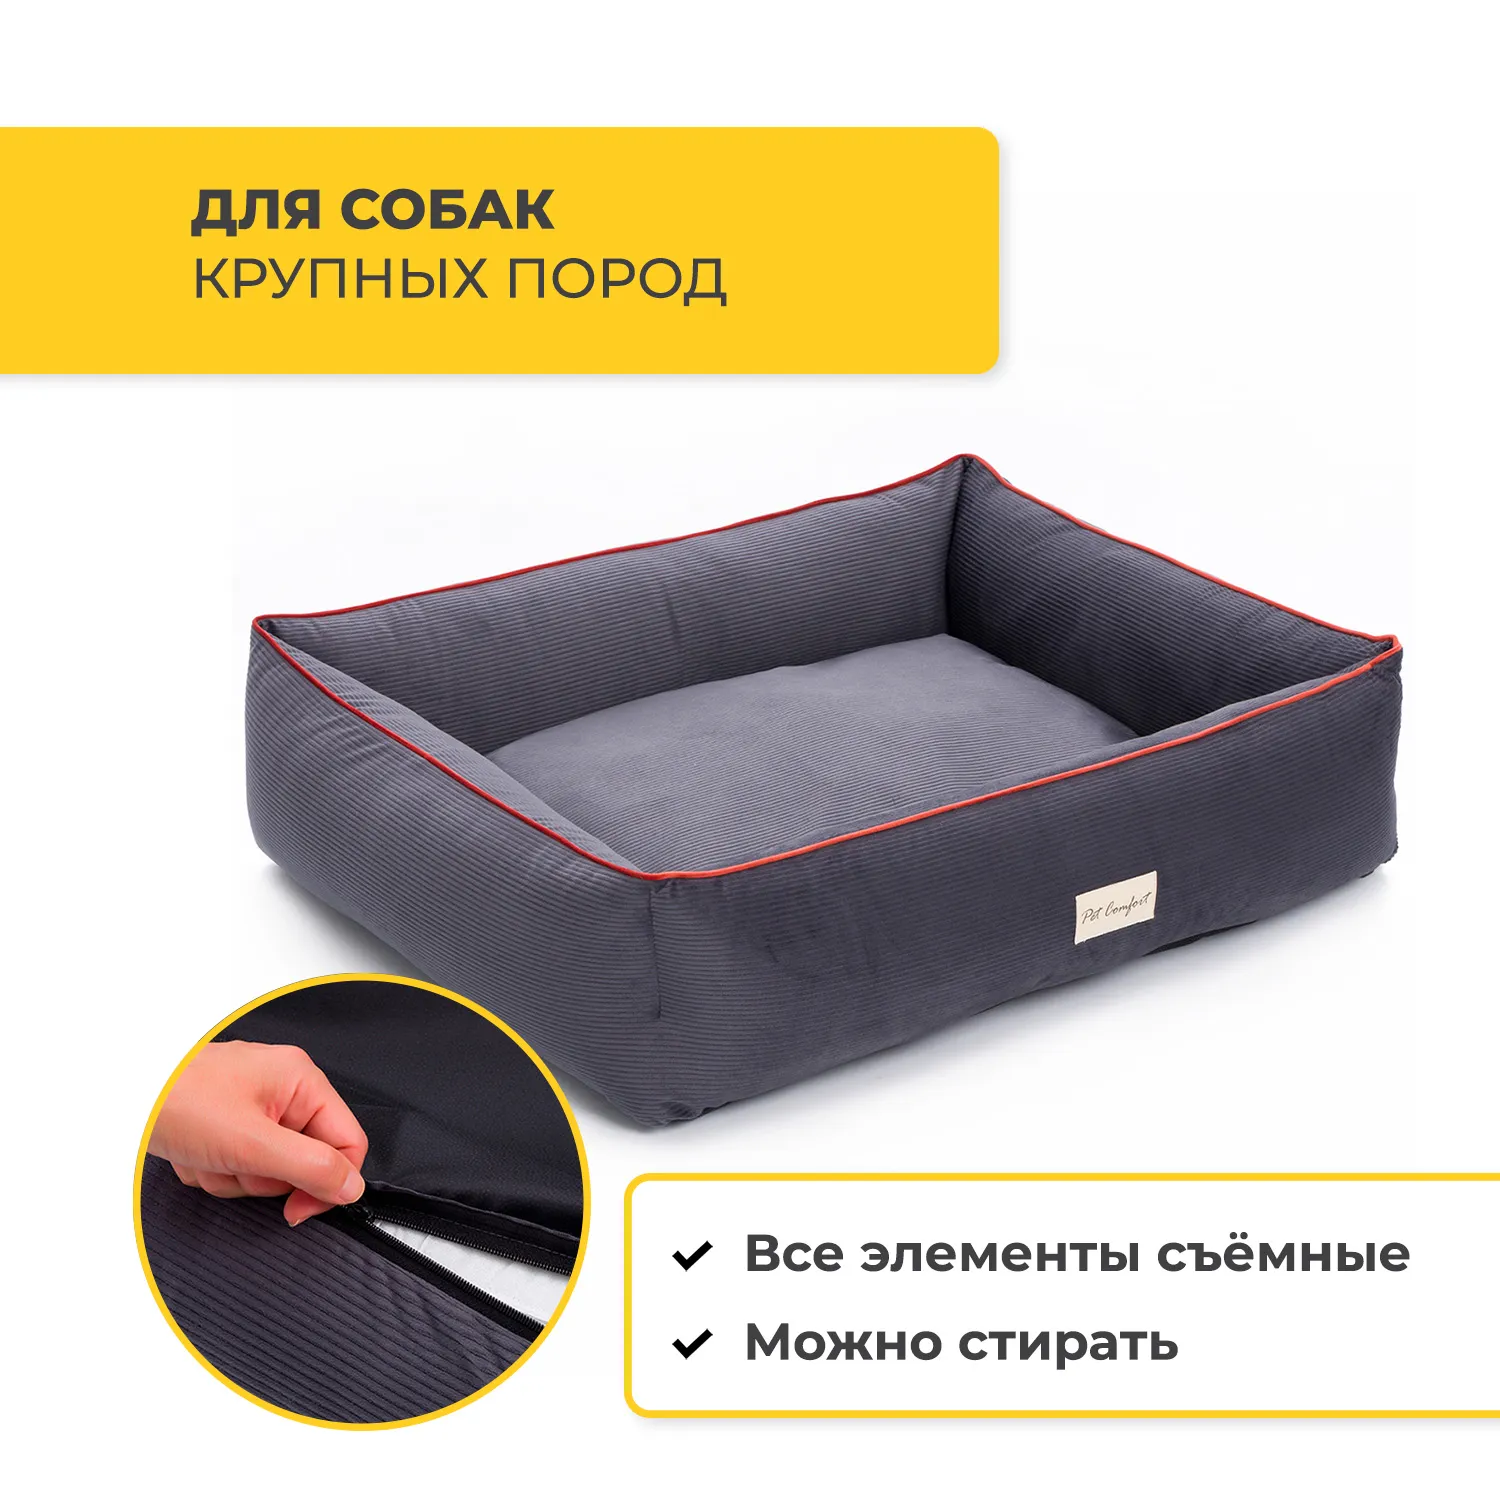 Лежанка Pet Comfort для собак крупных пород, Golf Vita 01, размер L 85х105 см, серый